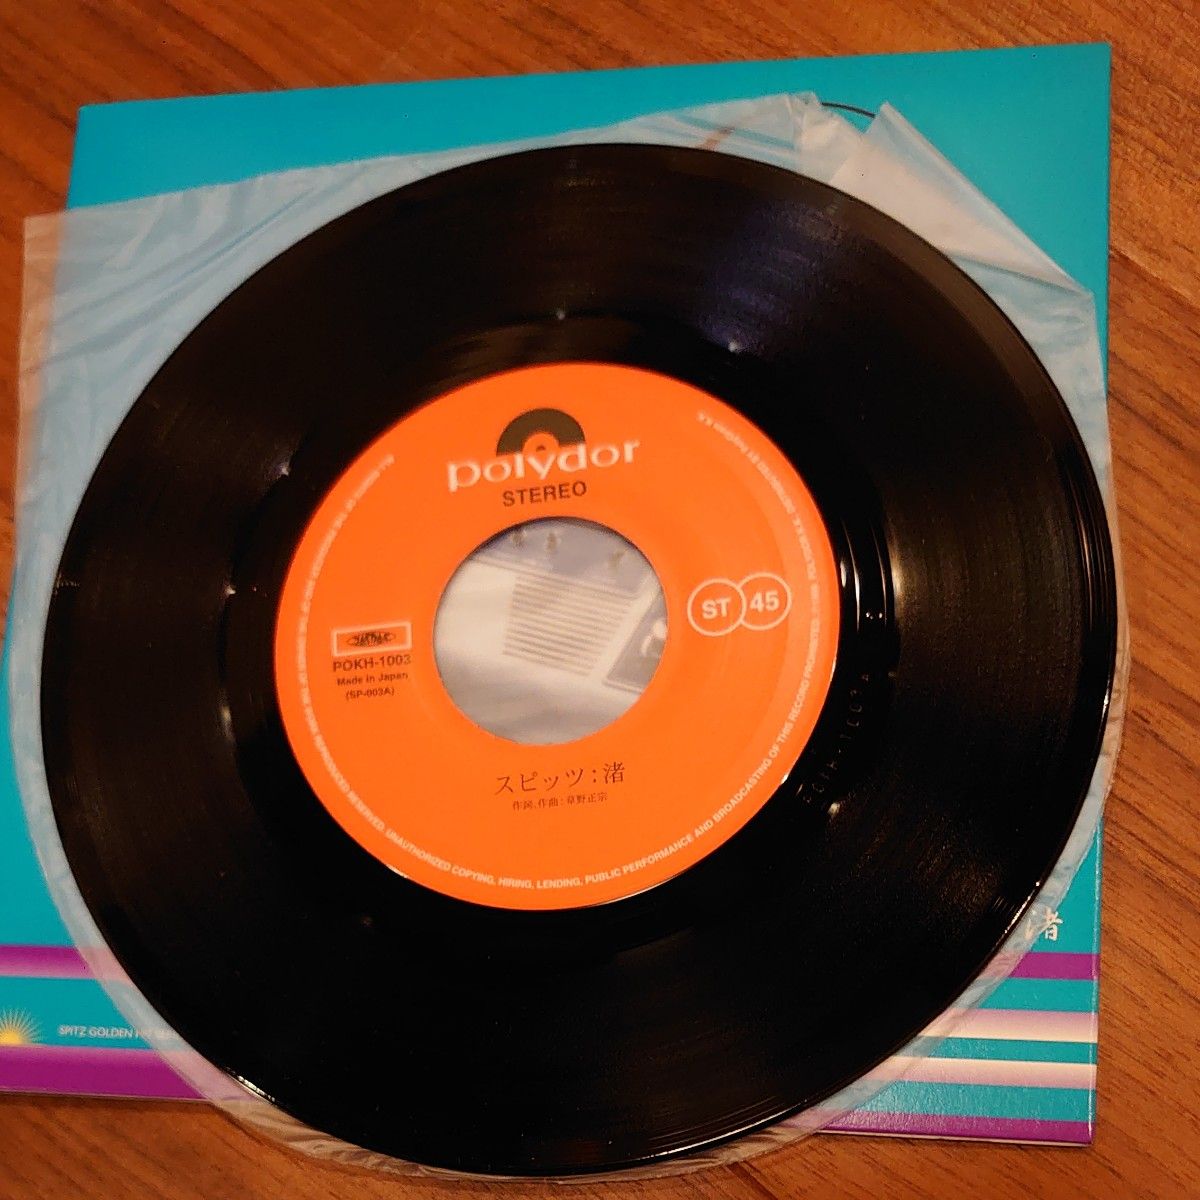 スピッツ「渚 / スカーレット」EP（7インチ）/Polydor(POKH-1003)/邦楽ロック